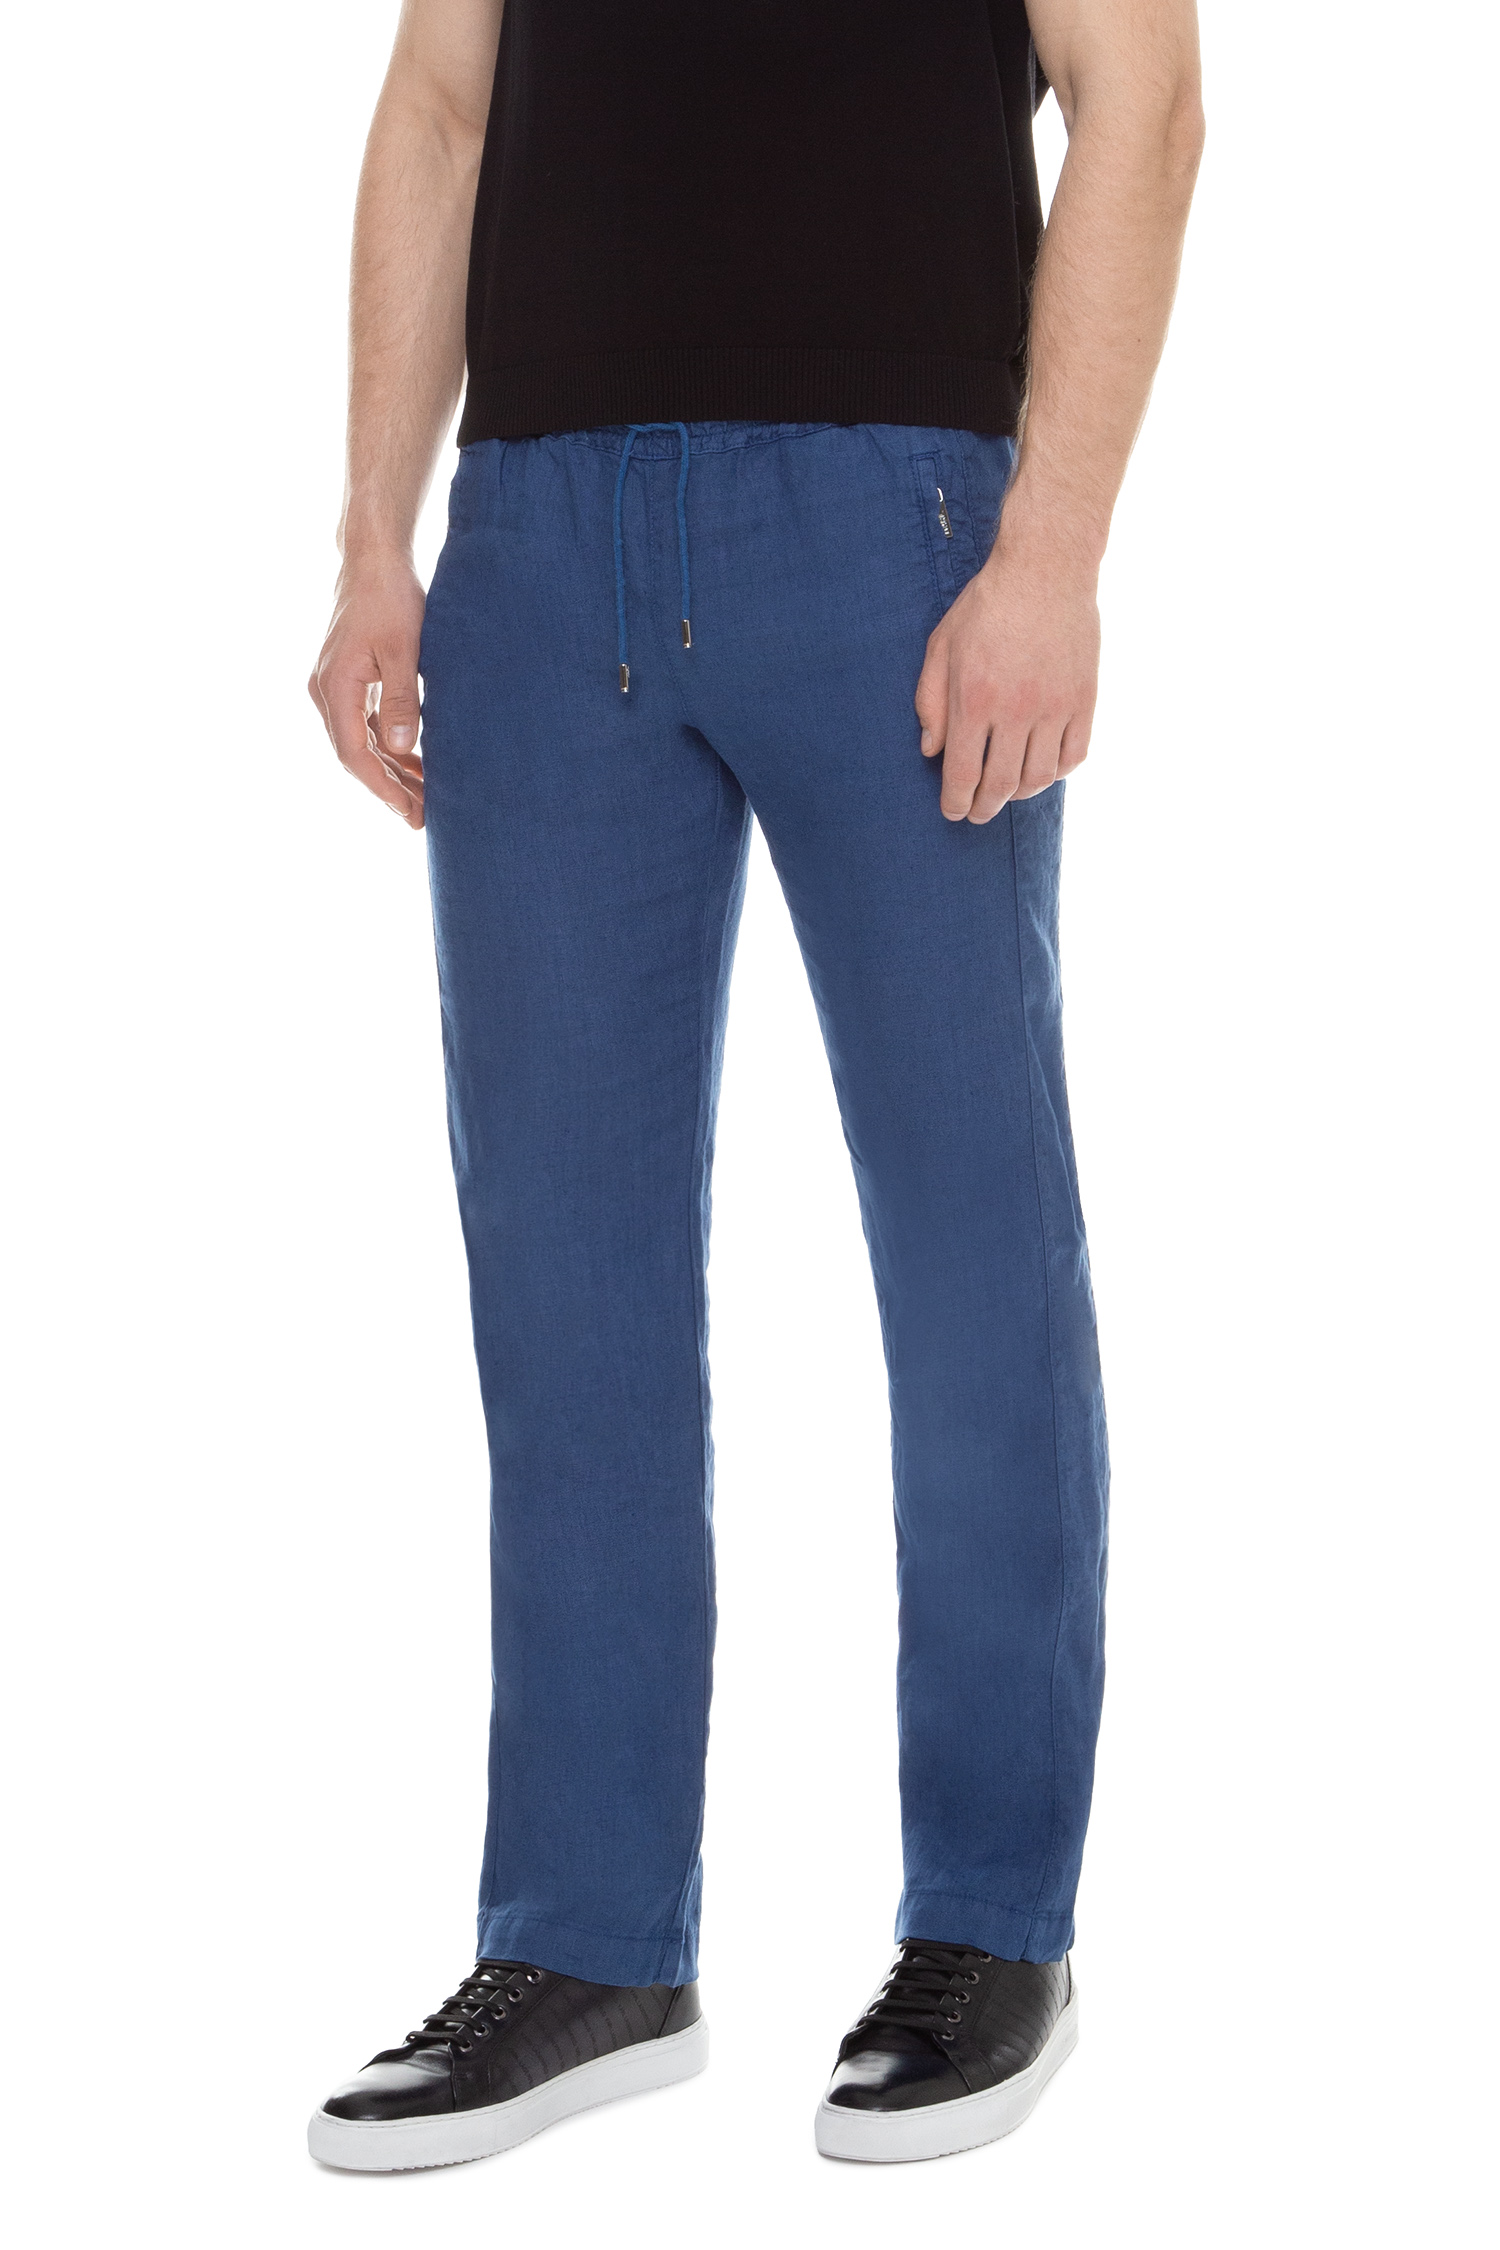 Мужские синие льняные брюки Karl Lagerfeld 591815.255815;650